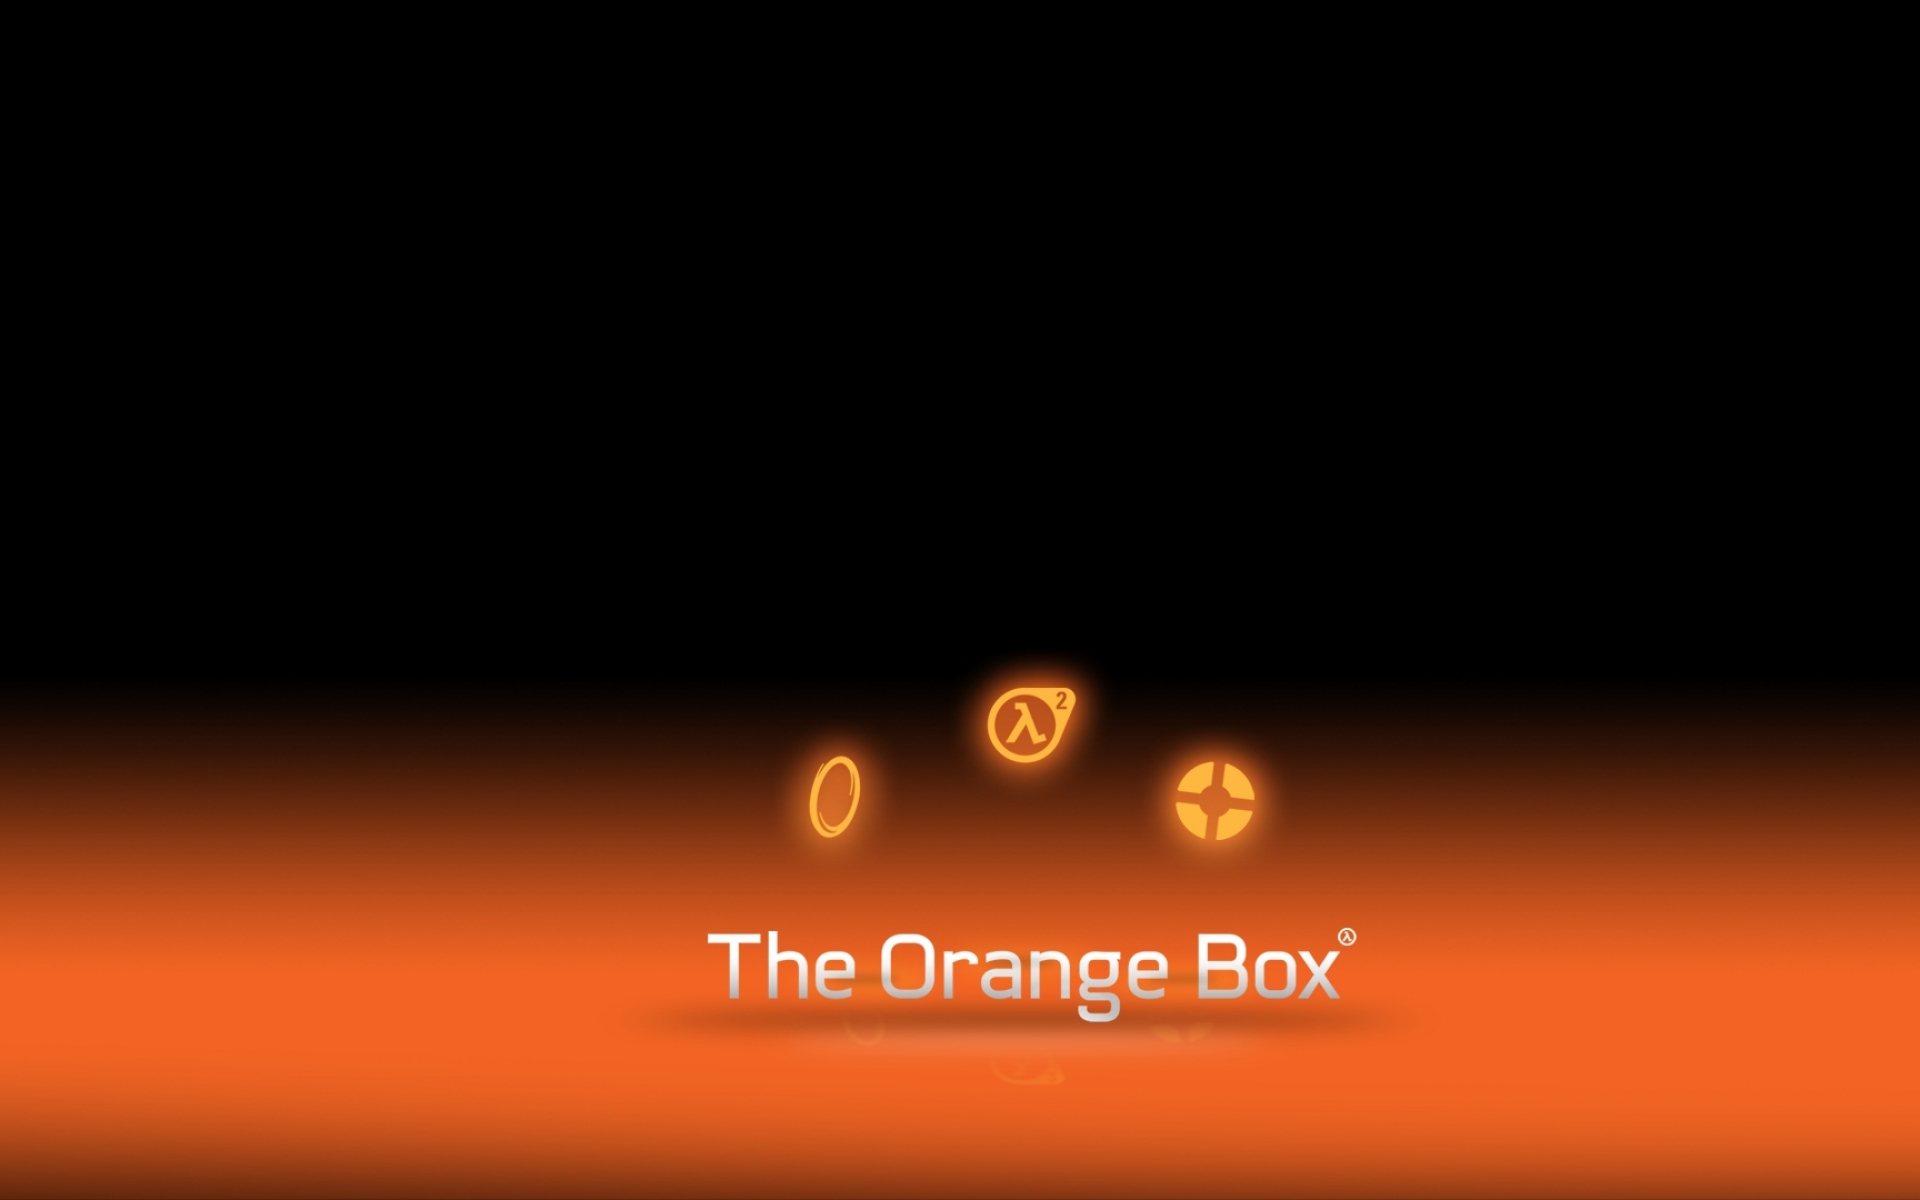 Картинки Оранжевая коробка, клапанная корпорация, период полураспада 2, командная крепость 2, портал фото и обои на рабочий стол